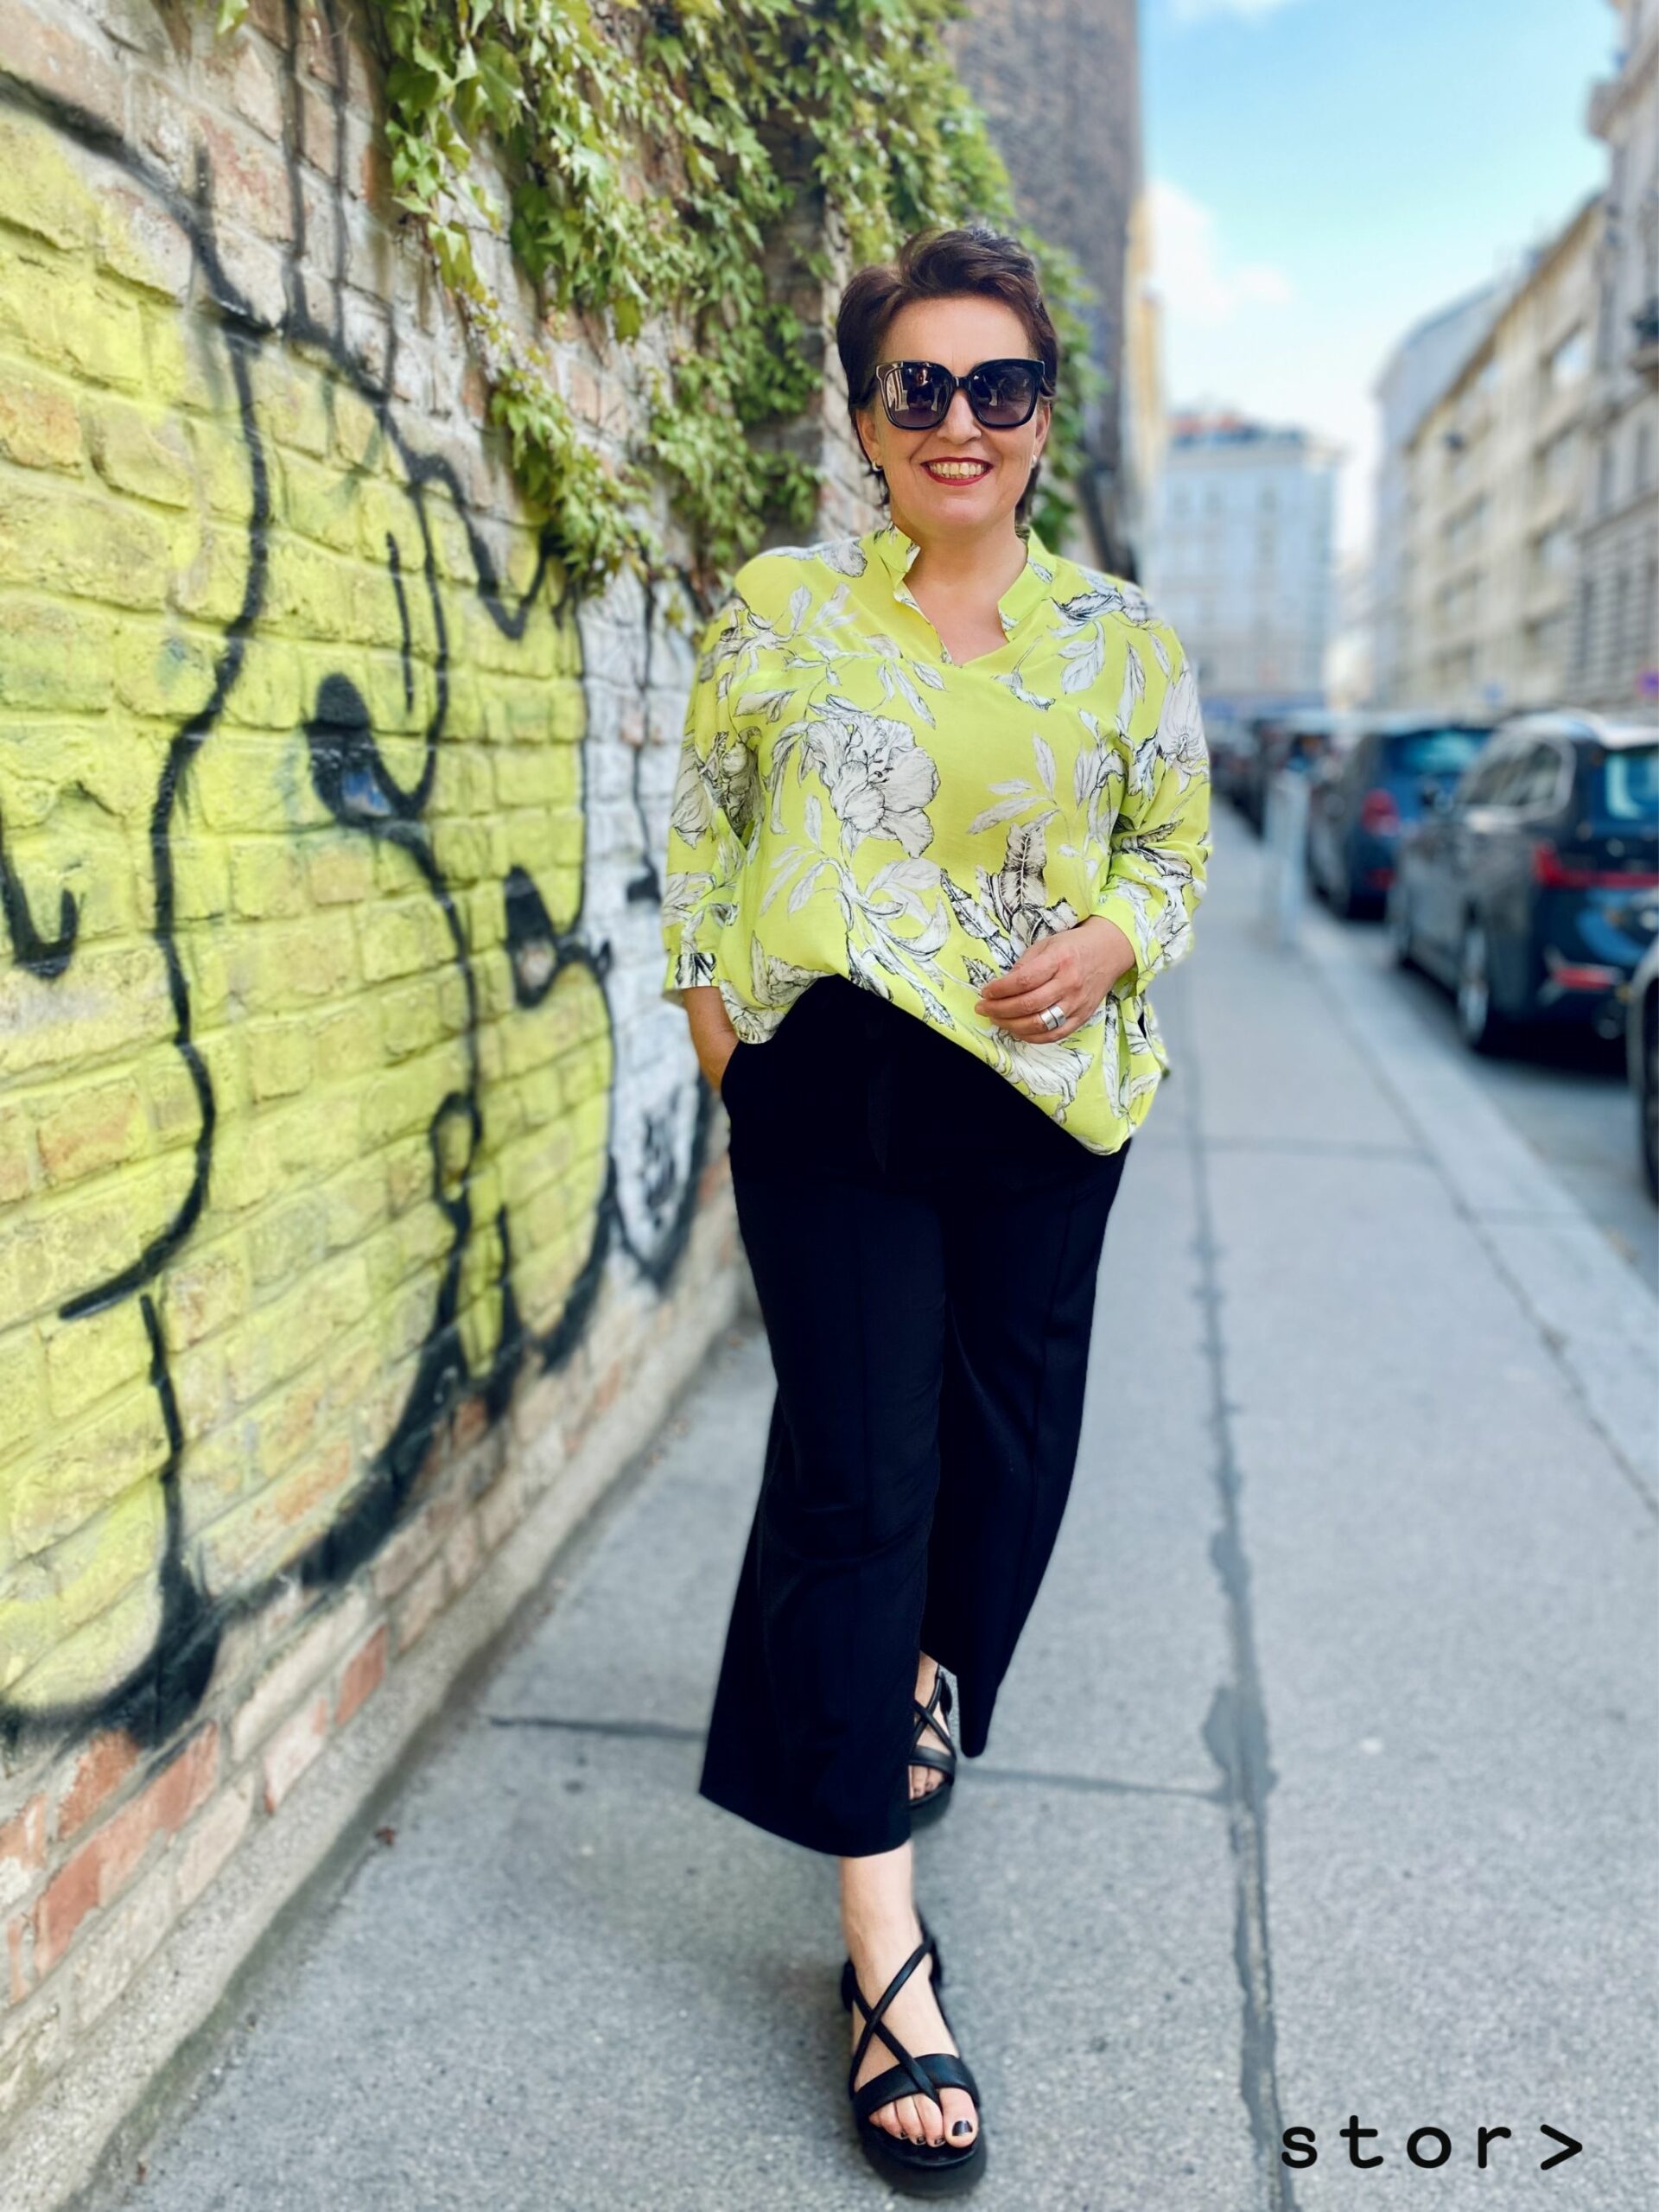 Schöne Mode in großen Größen von stor> Wien. Elegante Bluse in Gelbgrün mit weißen Blumenmuster und schwarzer Hose.